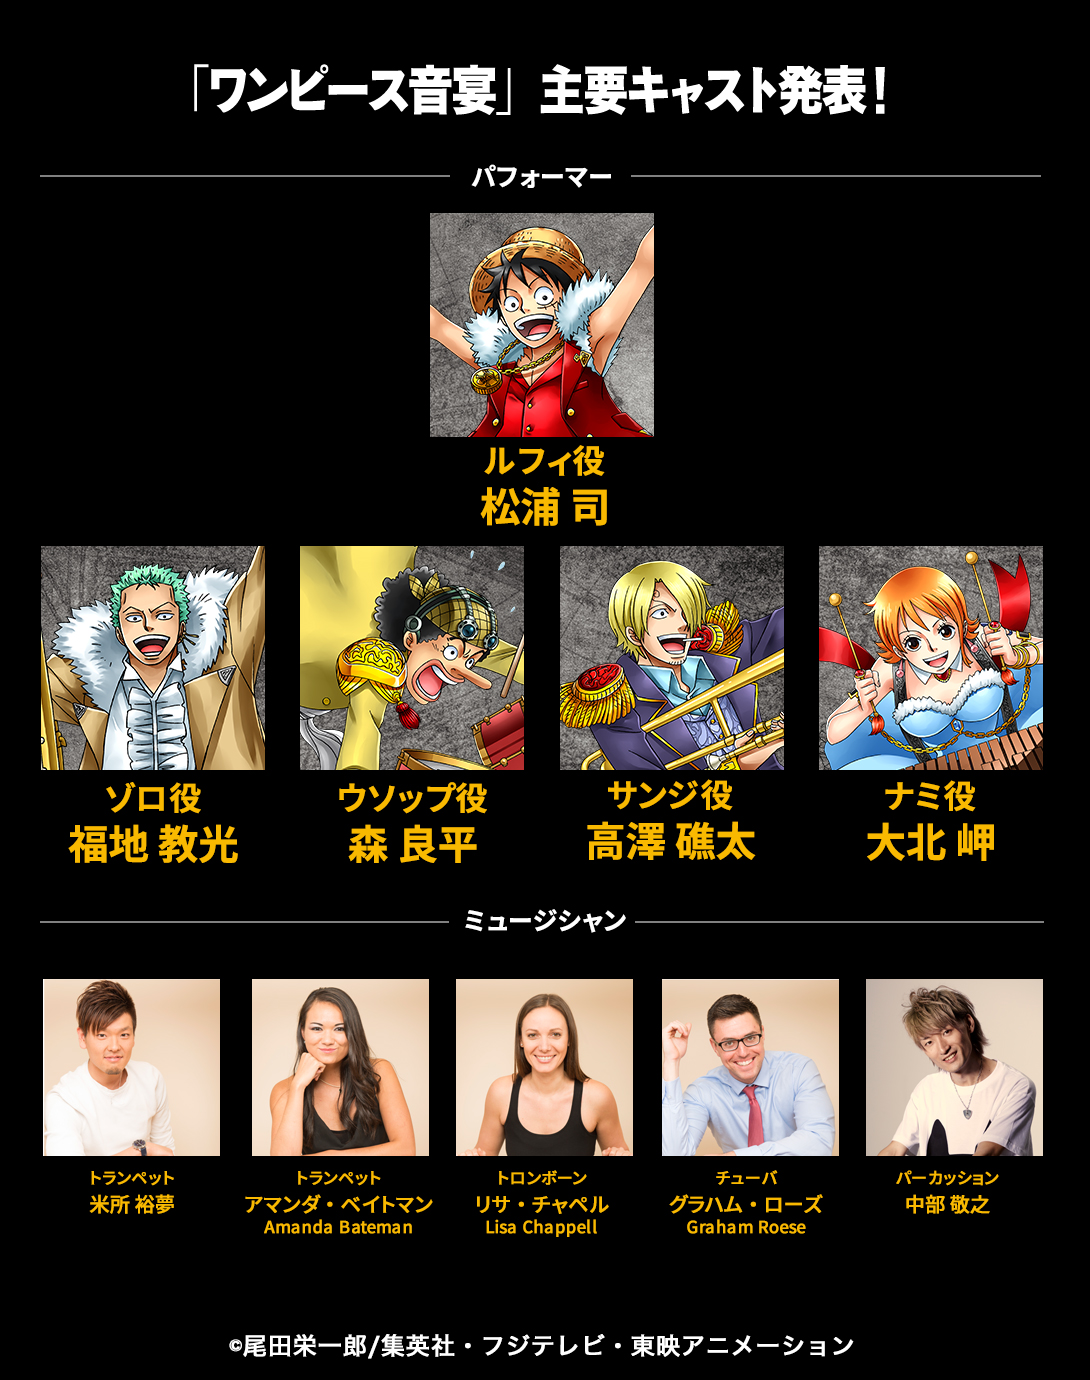 世界初の One Piece ブラス エンターテインメント ワンピース音宴 待望の主要キャスト発表 ブラスアレンジの ウィーアー 音源も初公開 株式会社 キョードー東京のプレスリリース